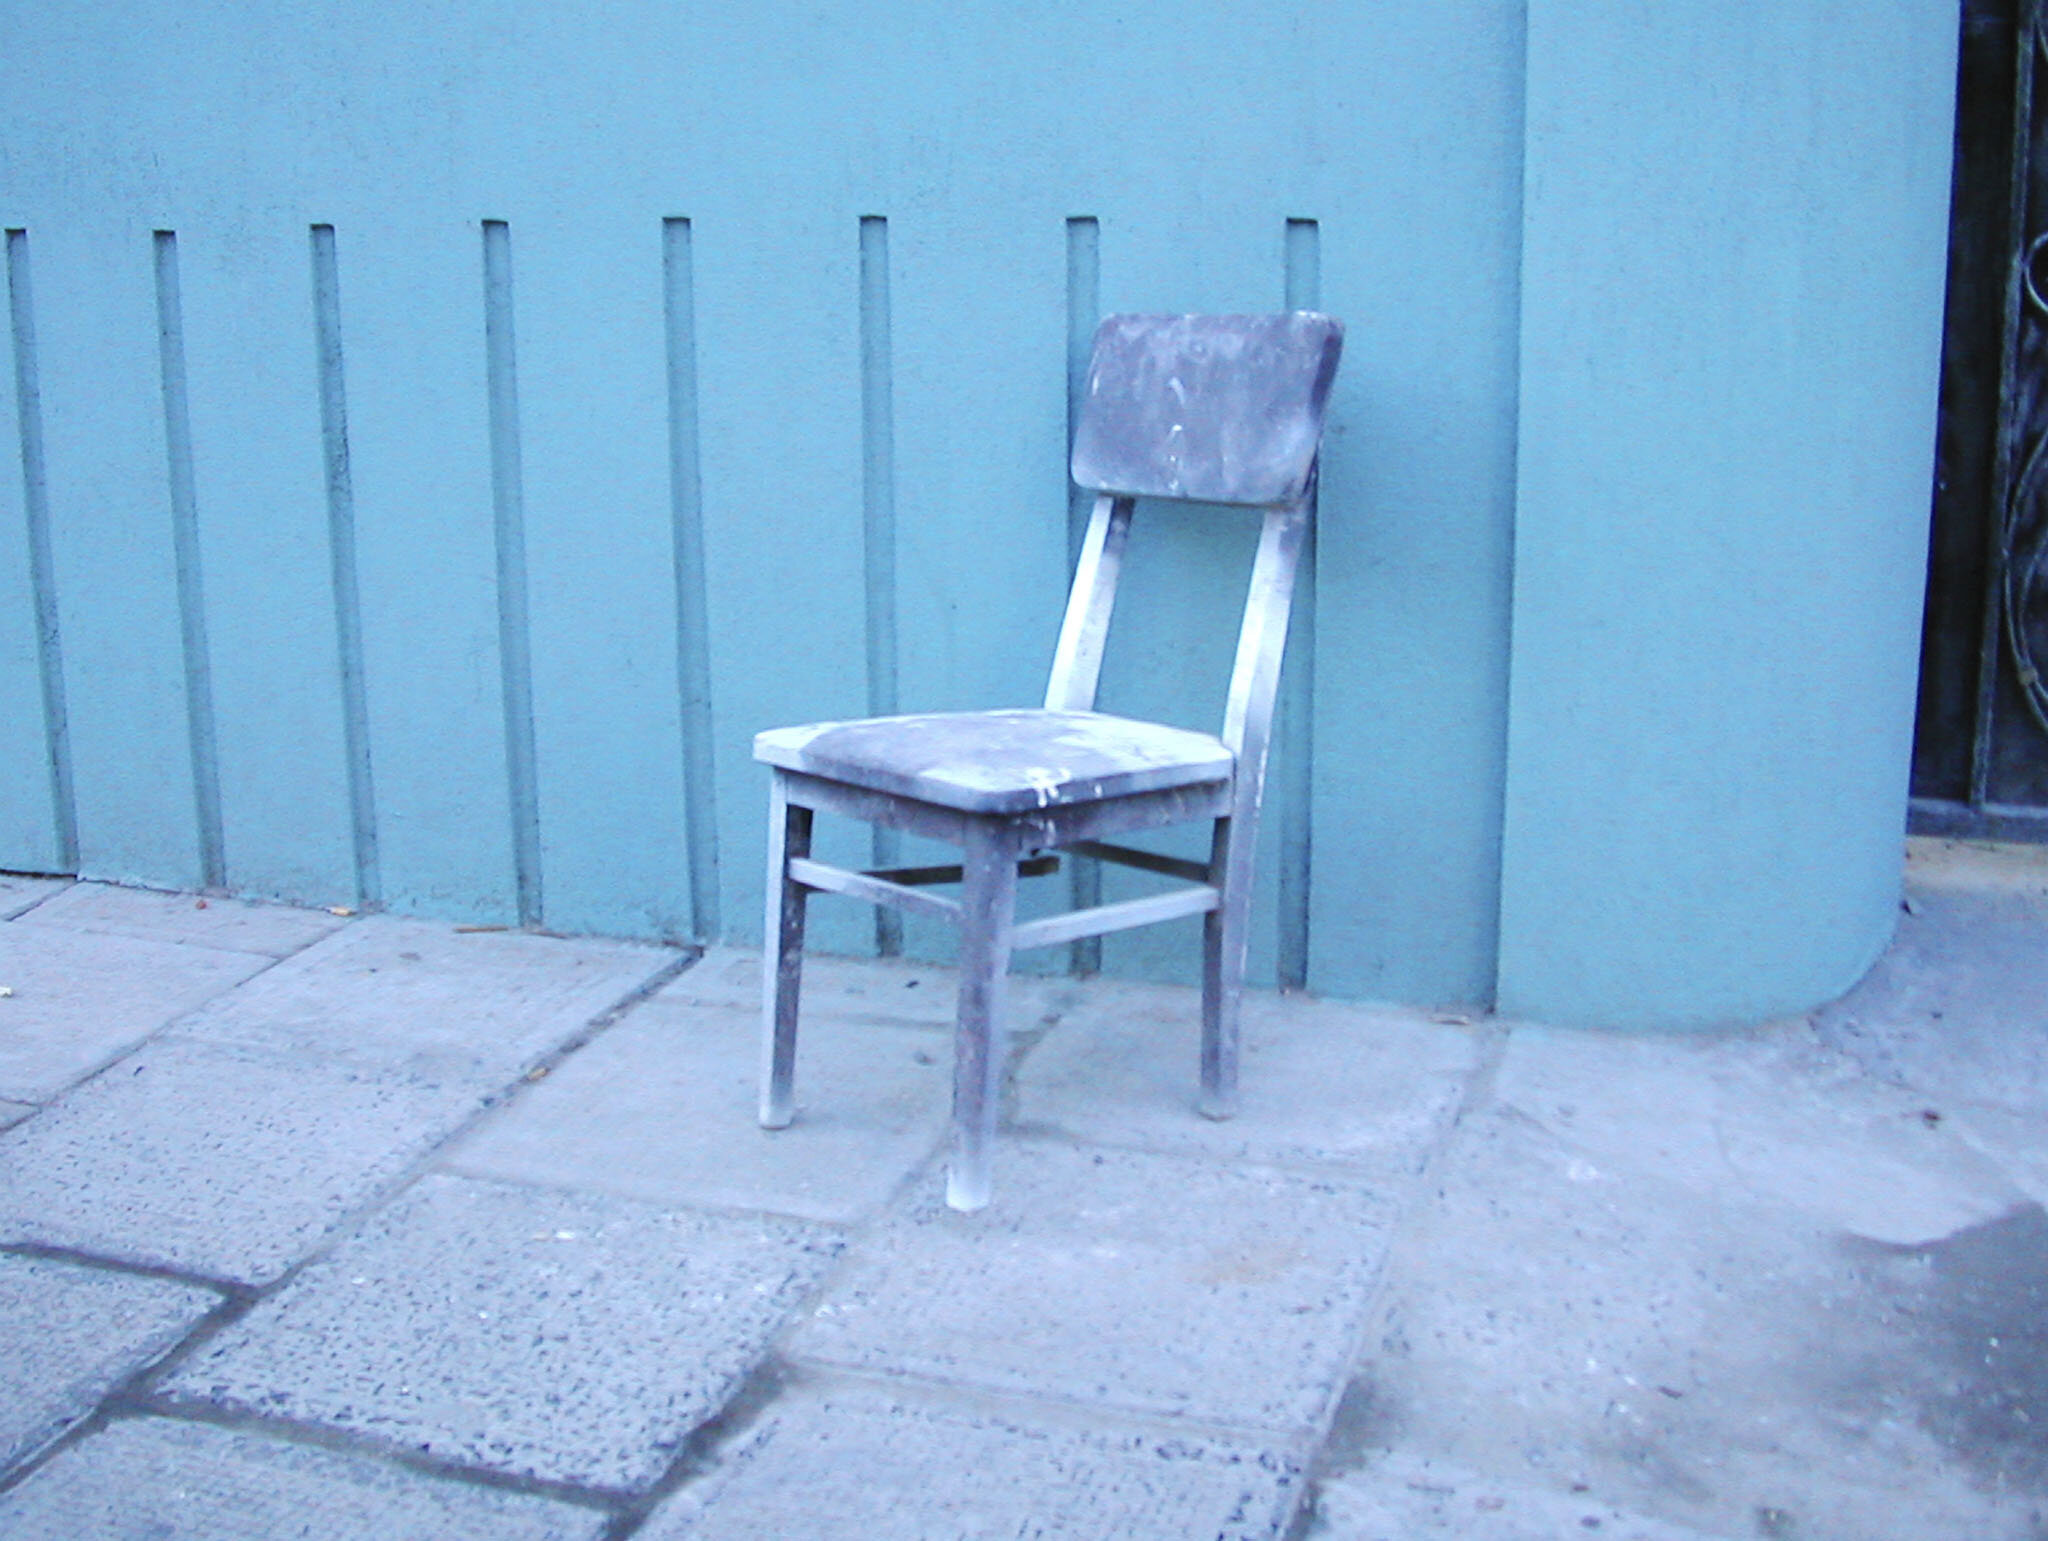  Shanghai Chair No. 12 